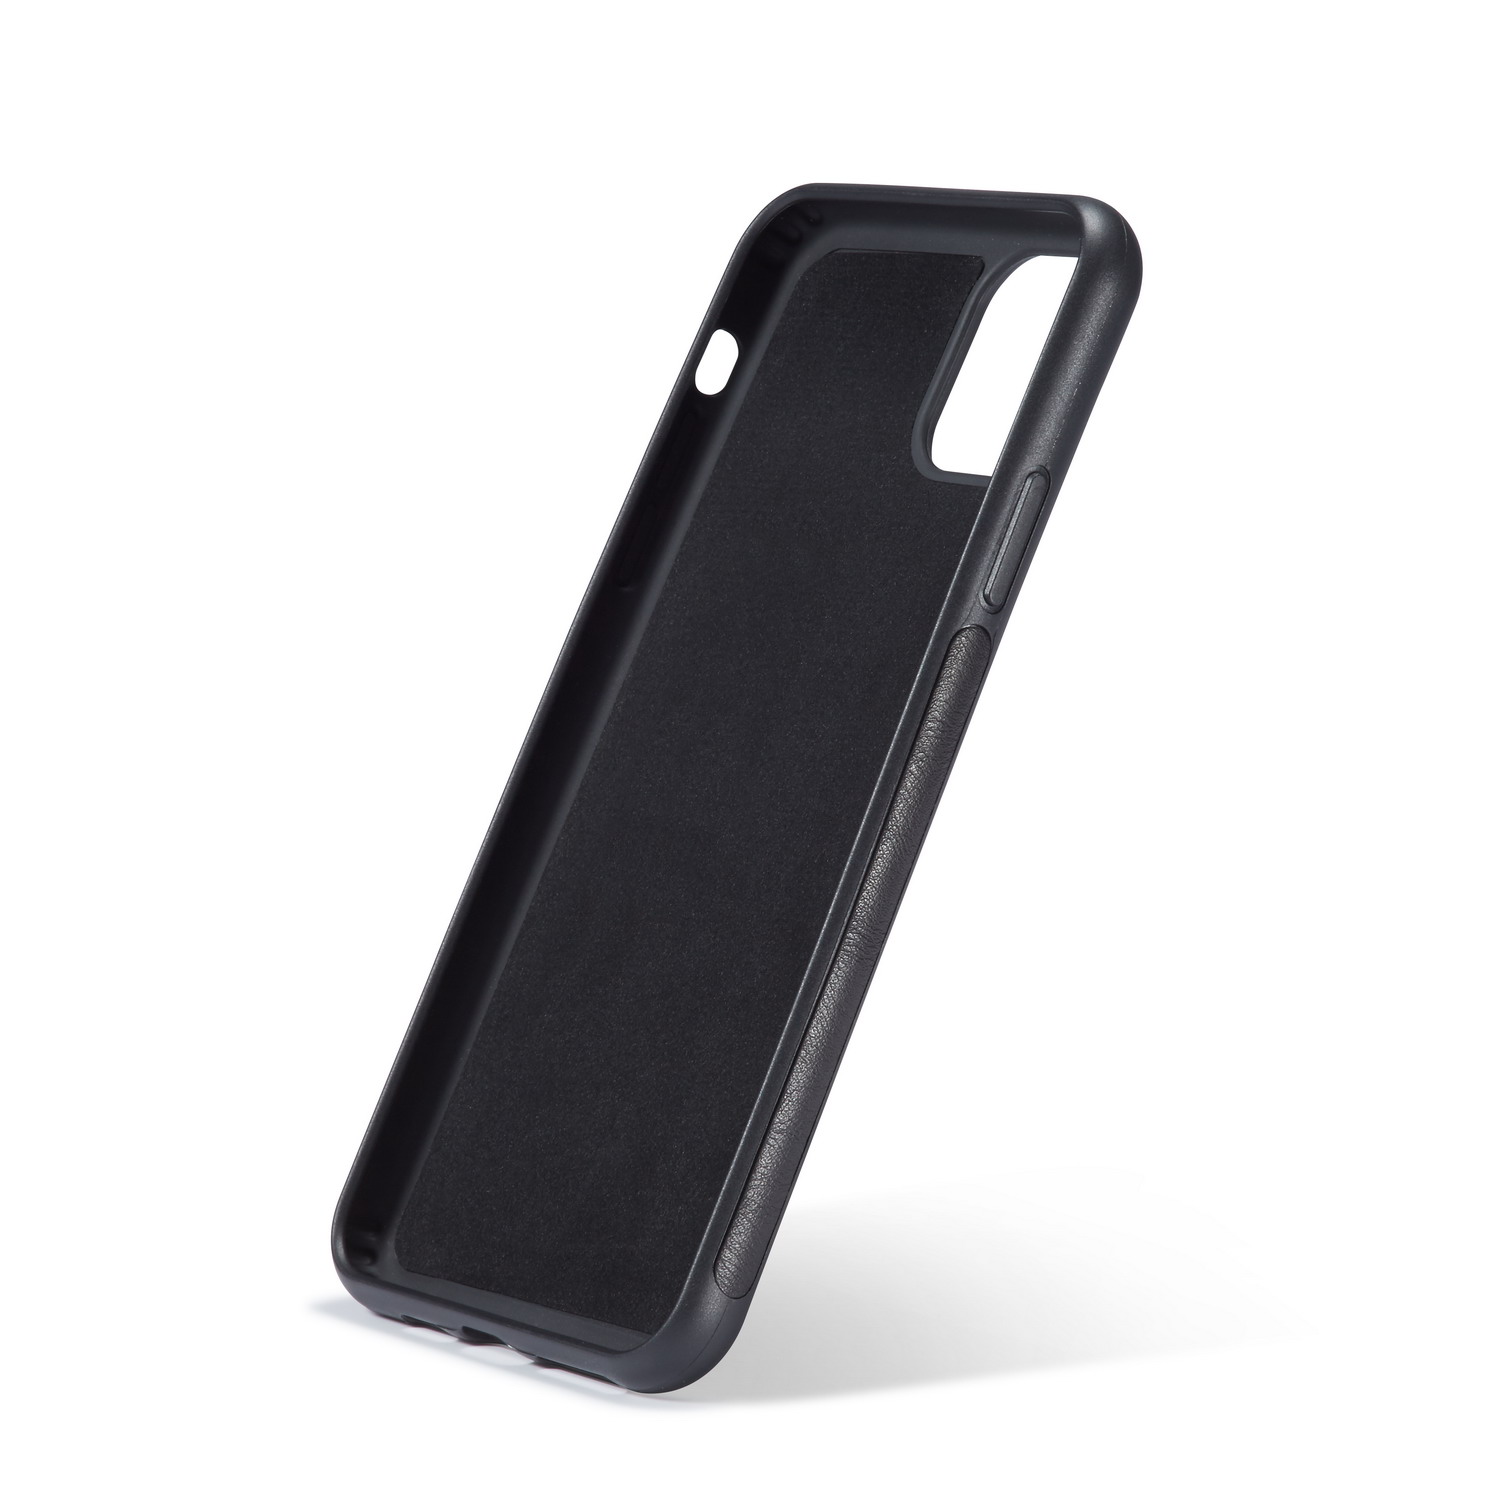 BRG Luxury plånboksfodral med ställ till iPhone 11 Pro, svart